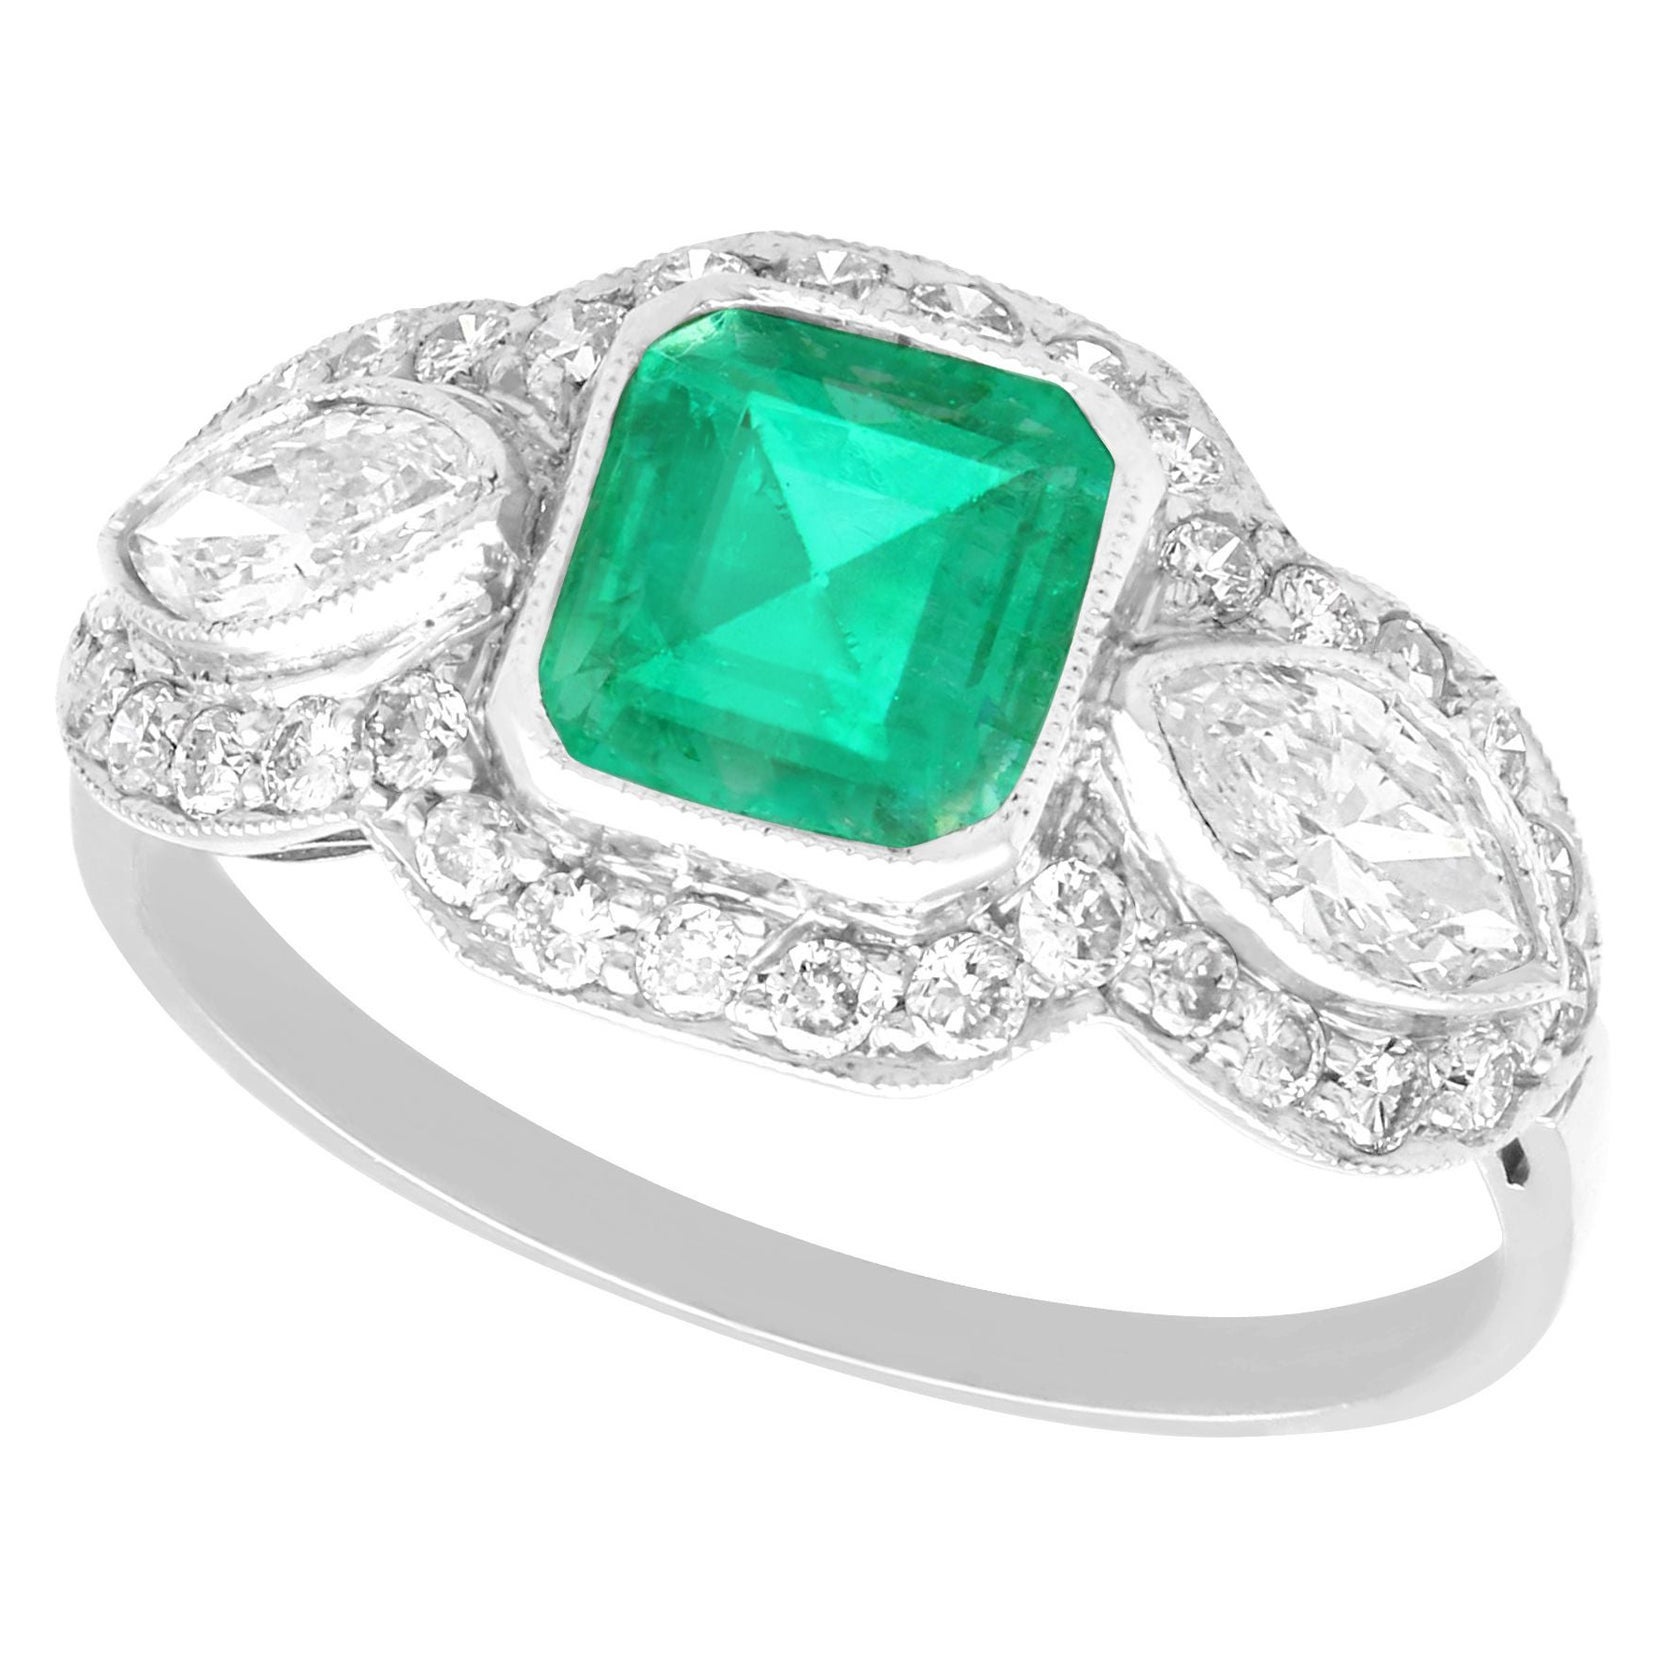 Antique 1.45 Carat Emerald and 1.43 Carat Diamond Platinum Engagement Ring For Sale